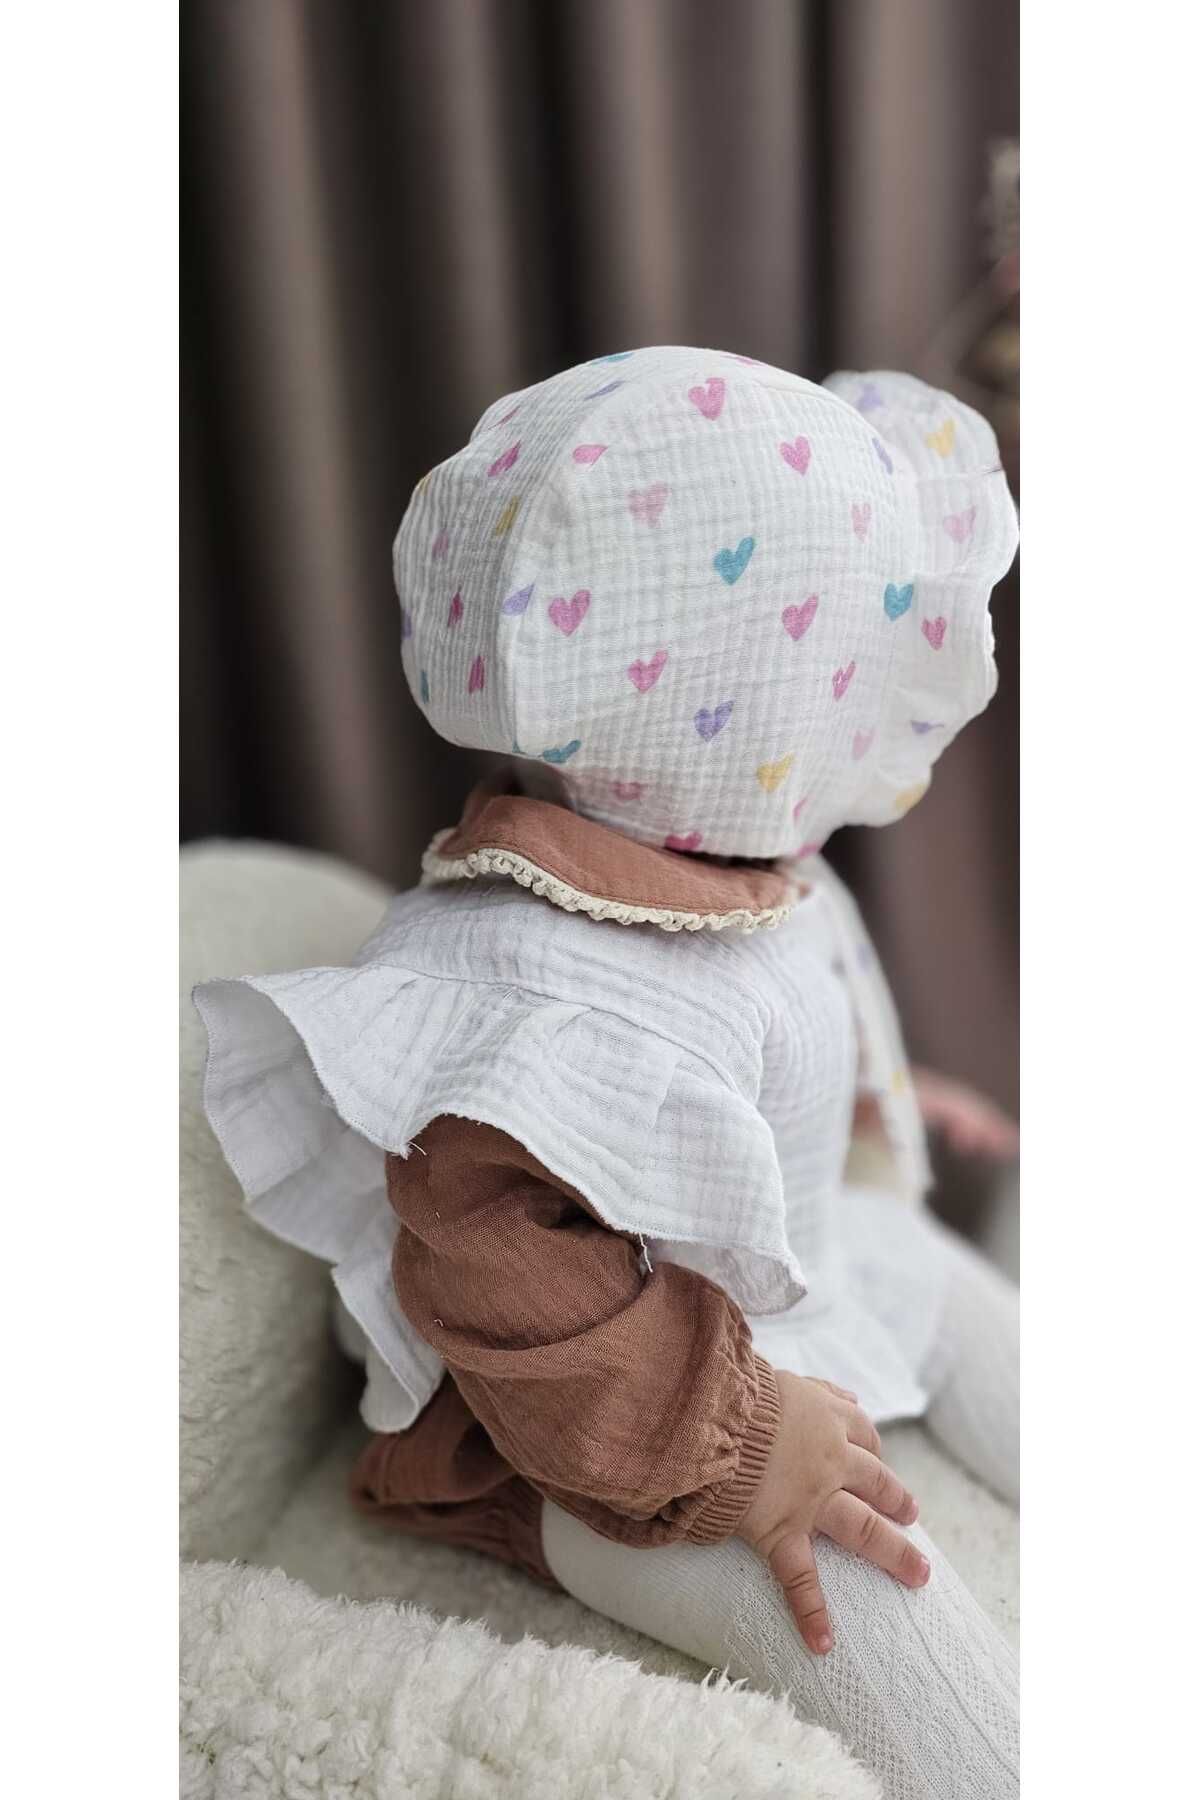 Alya bebek çocuk bonnet müslin çift taraflı şapka önlük fular takım